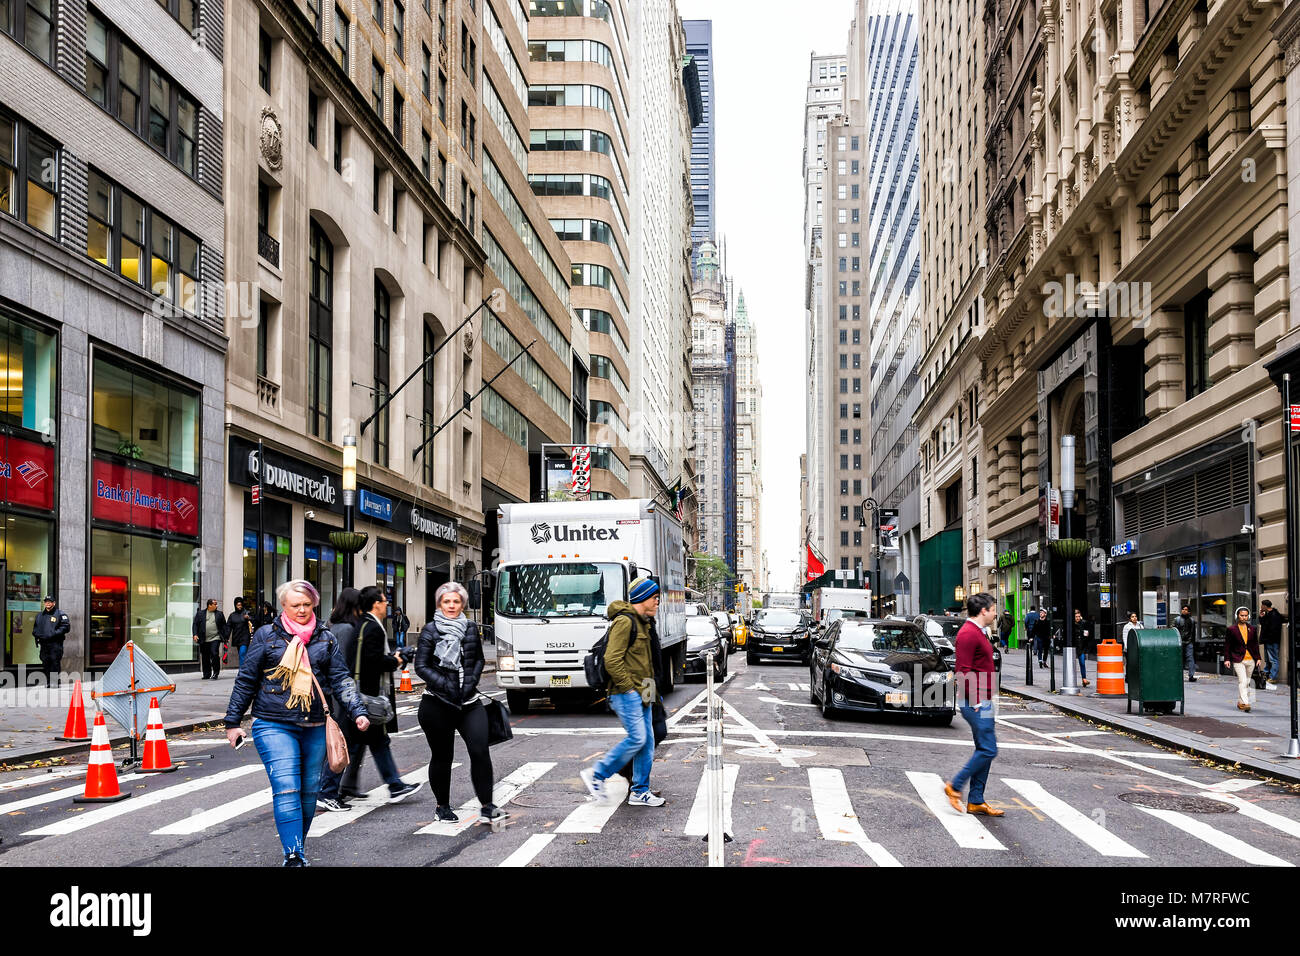 New York City, USA - 30. Oktober 2017: Broadway St von Wall Street Börse Charging Bull überschreitenden Personen in New York City Manhattan geringere finanzielle Distri Stockfoto